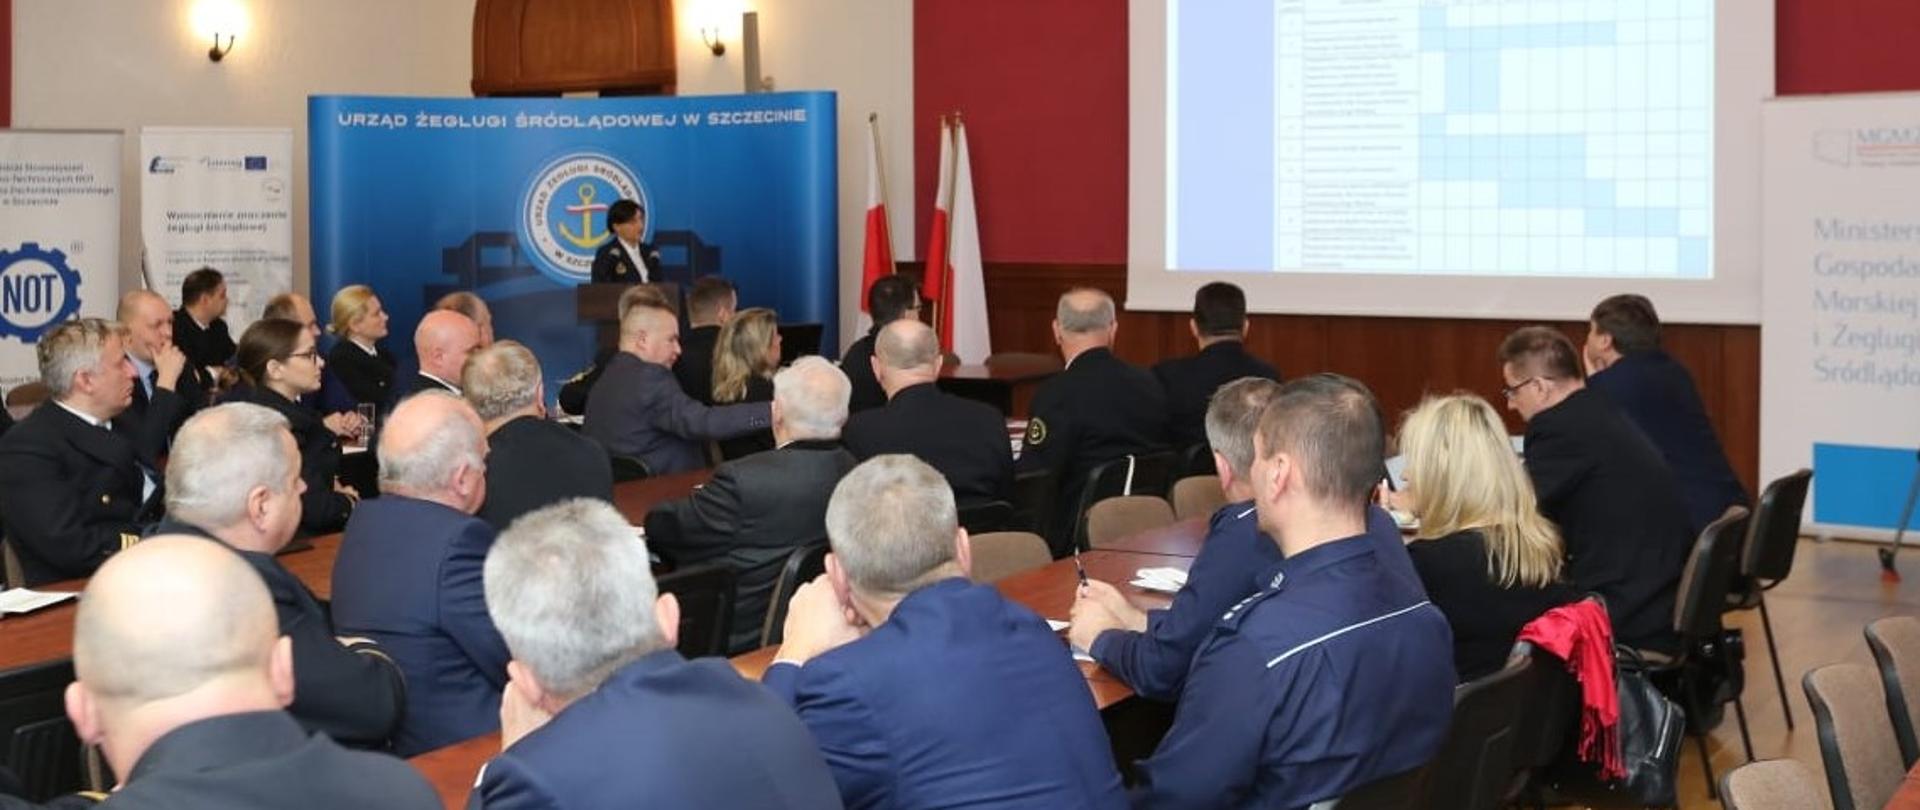 Konferencja w Urzędzie Żeglugi Śródlądowej w Szczecinie